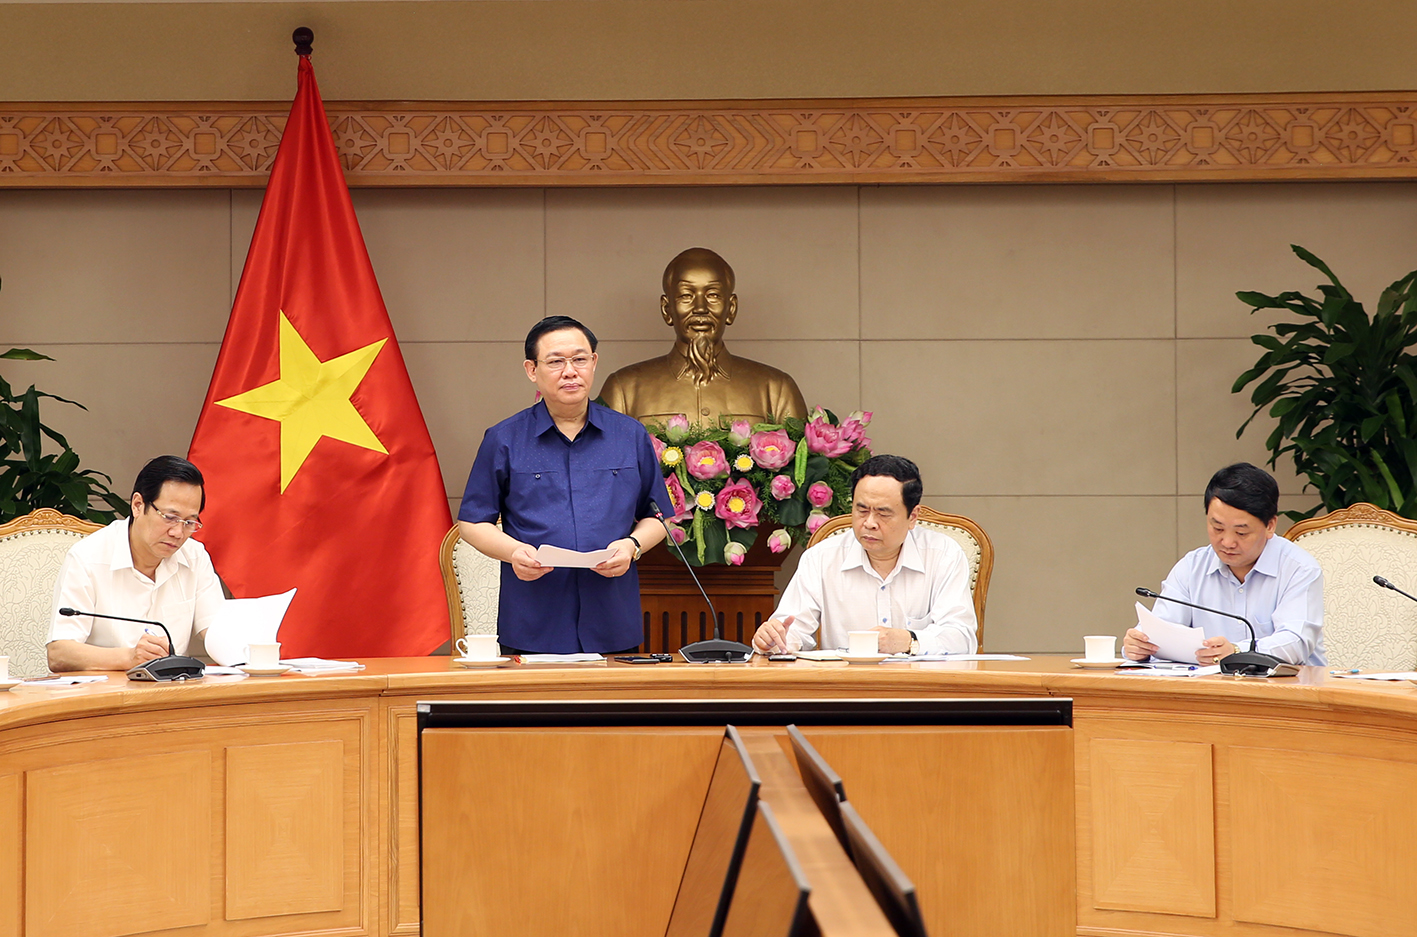 Phó Thủ tướng Vương Đình Huệ phát biểu tại buổi họp. Ảnh: VGP/Thành Chung